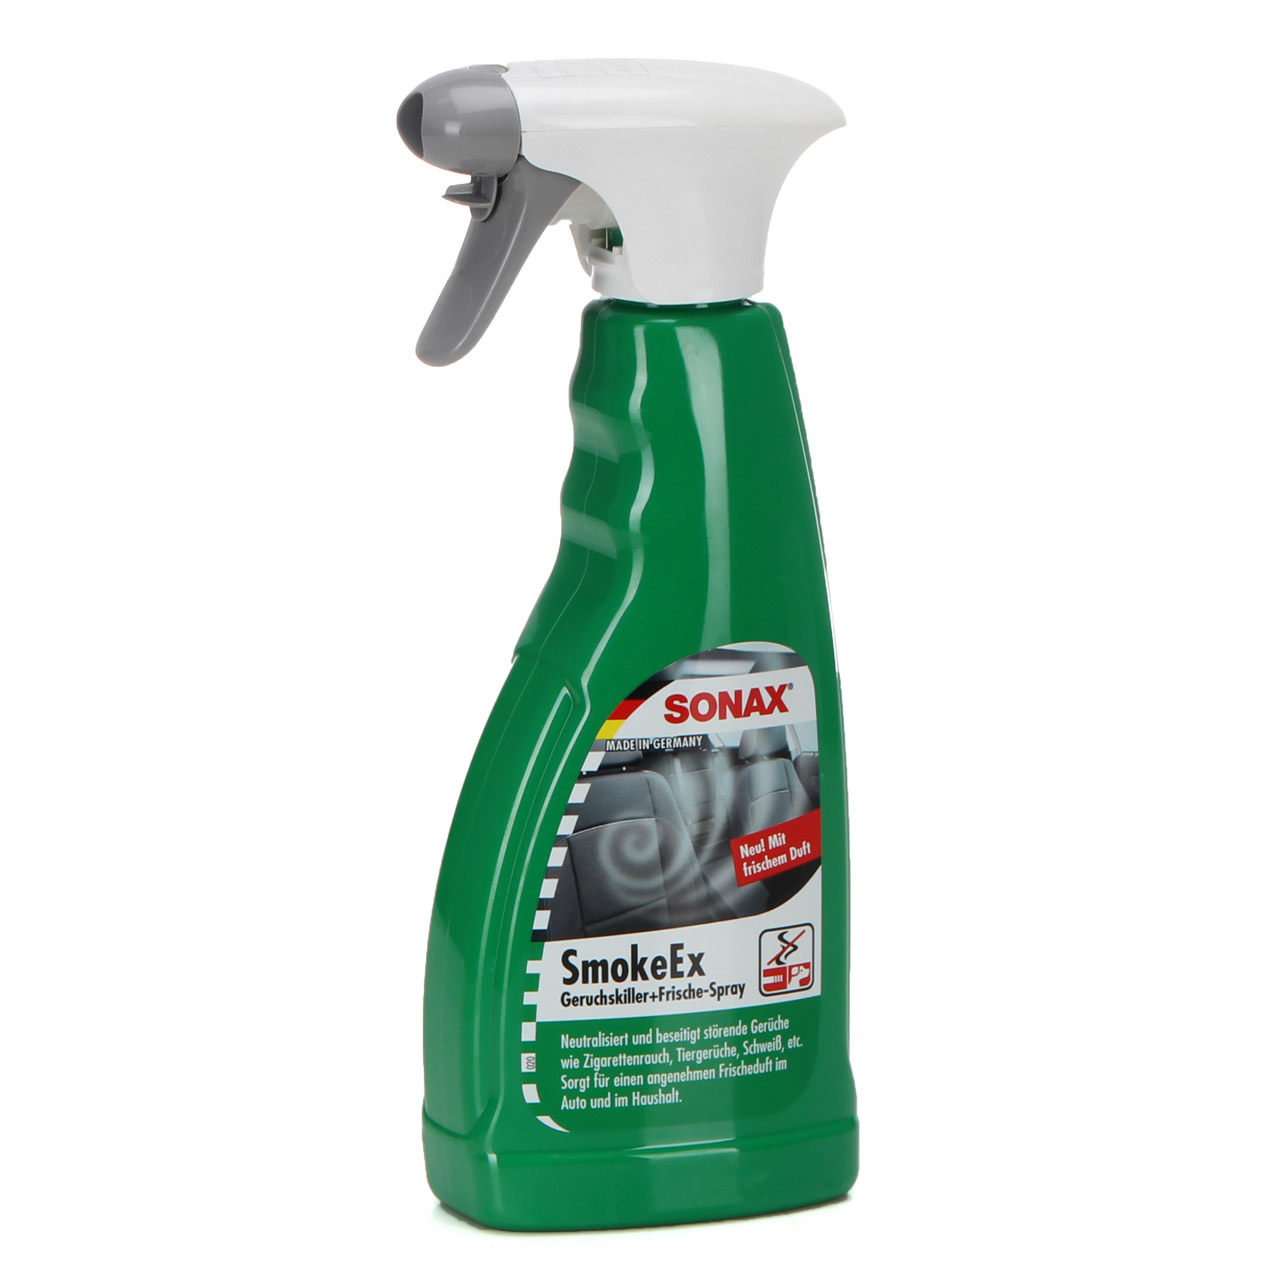 SONAX SmokeEx Geruchskiller & Frische-Spray Geruchsentferner 500ml 292241